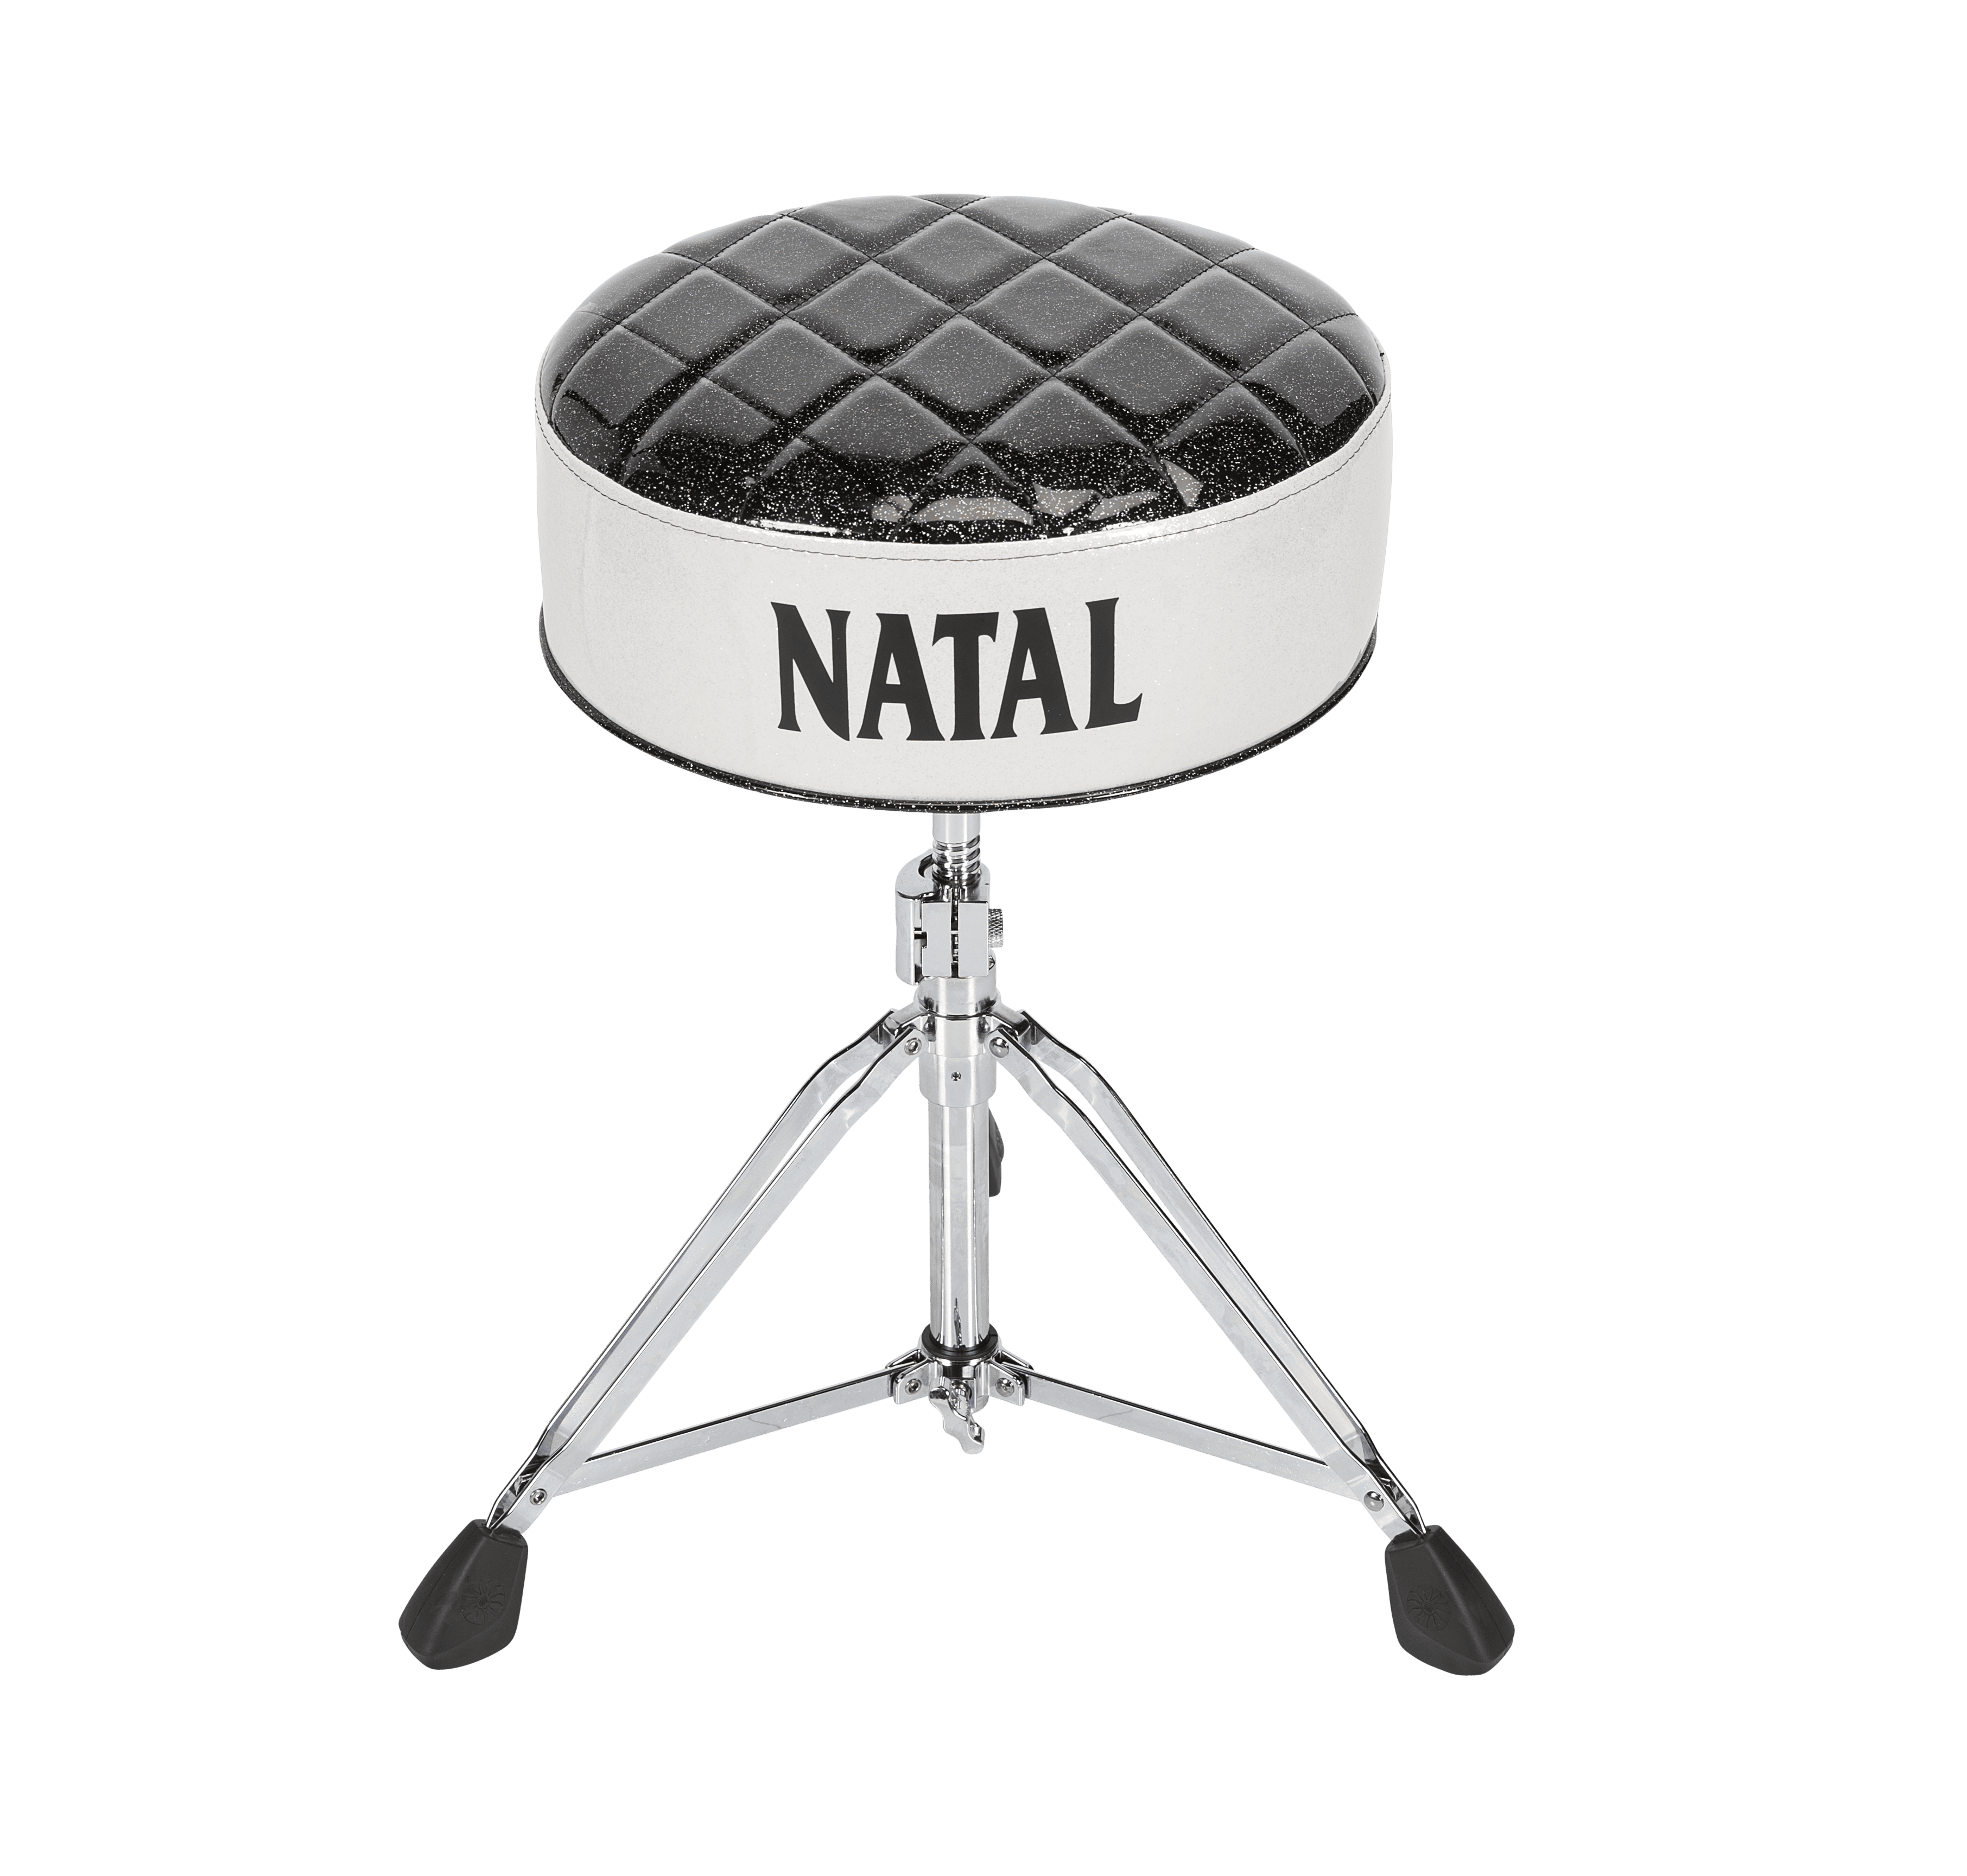 כיסא תופים Marshall Natal Black and white Deluxe Throne